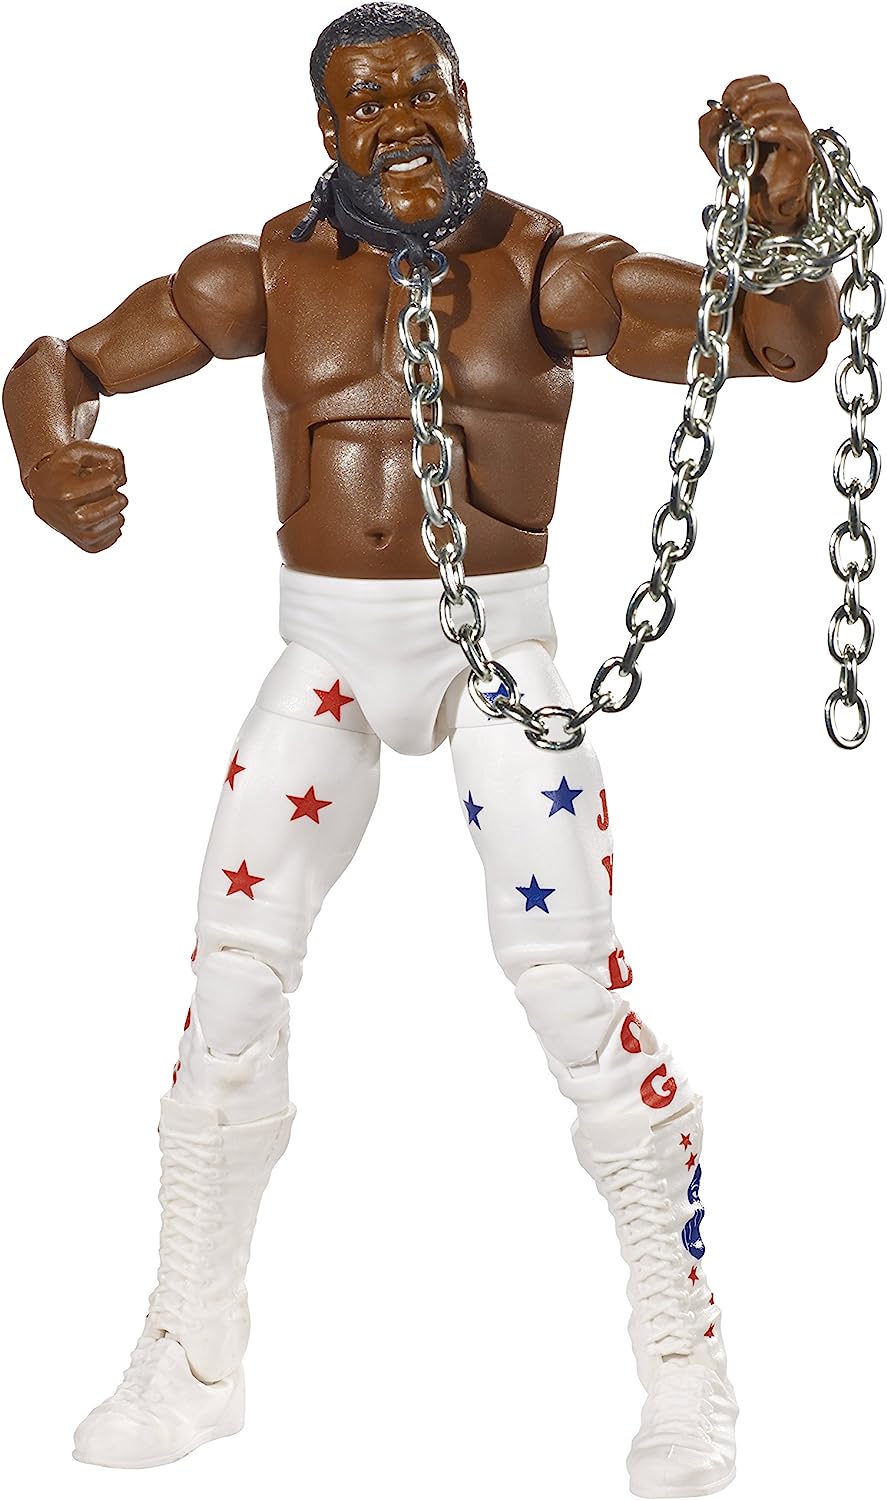 Mattel WWE Elite Collection Series #33 Junkyard Dog